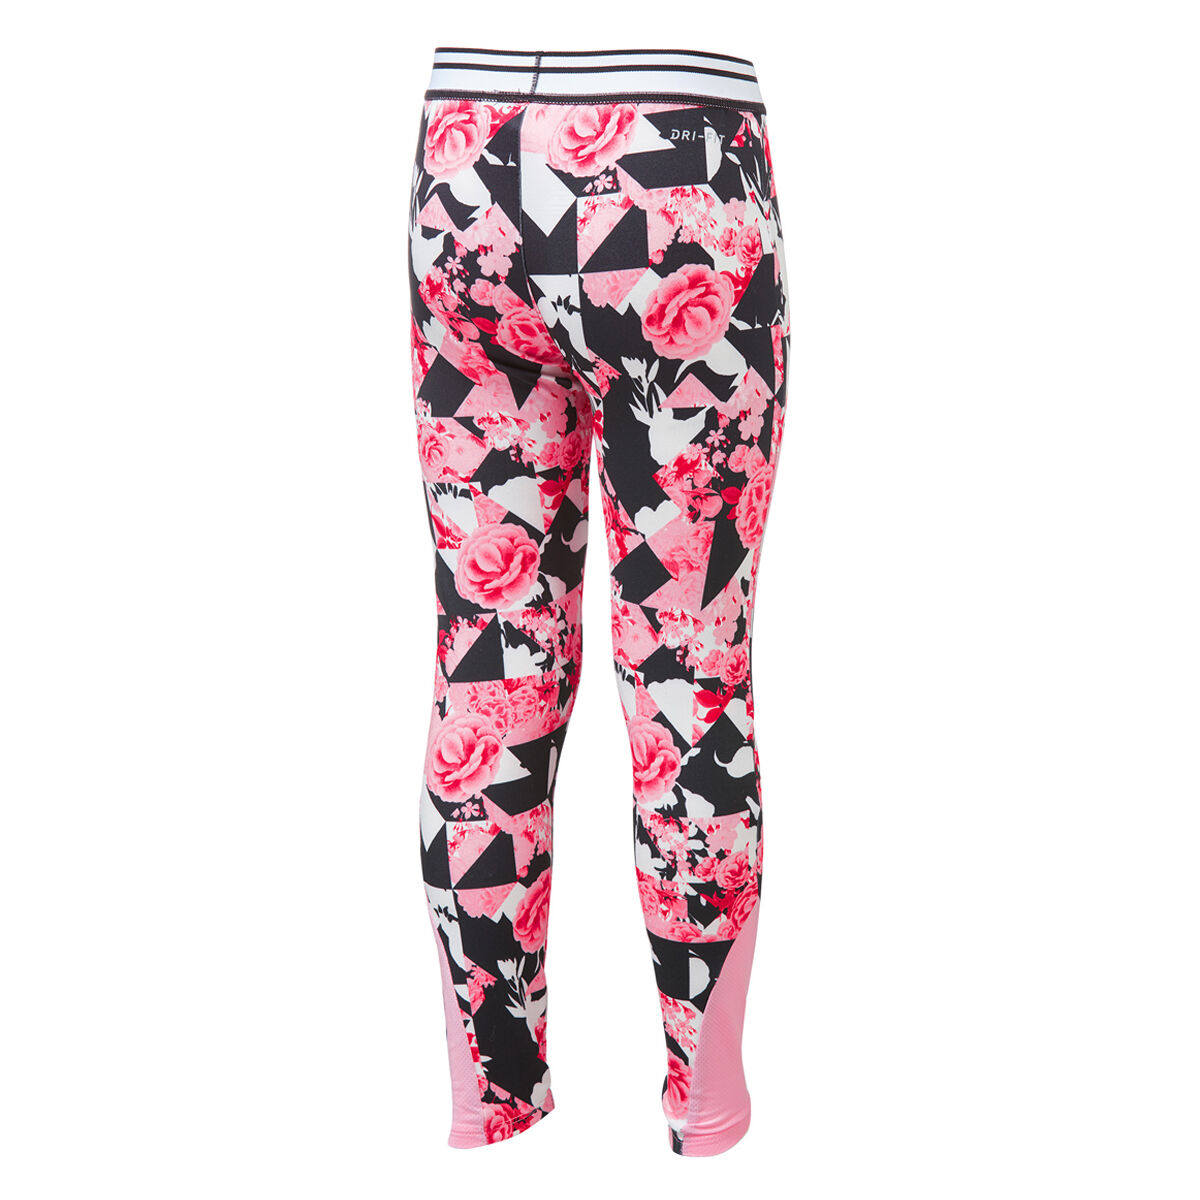 Nike Girls Tokyo Floral Leggings Pink 7 